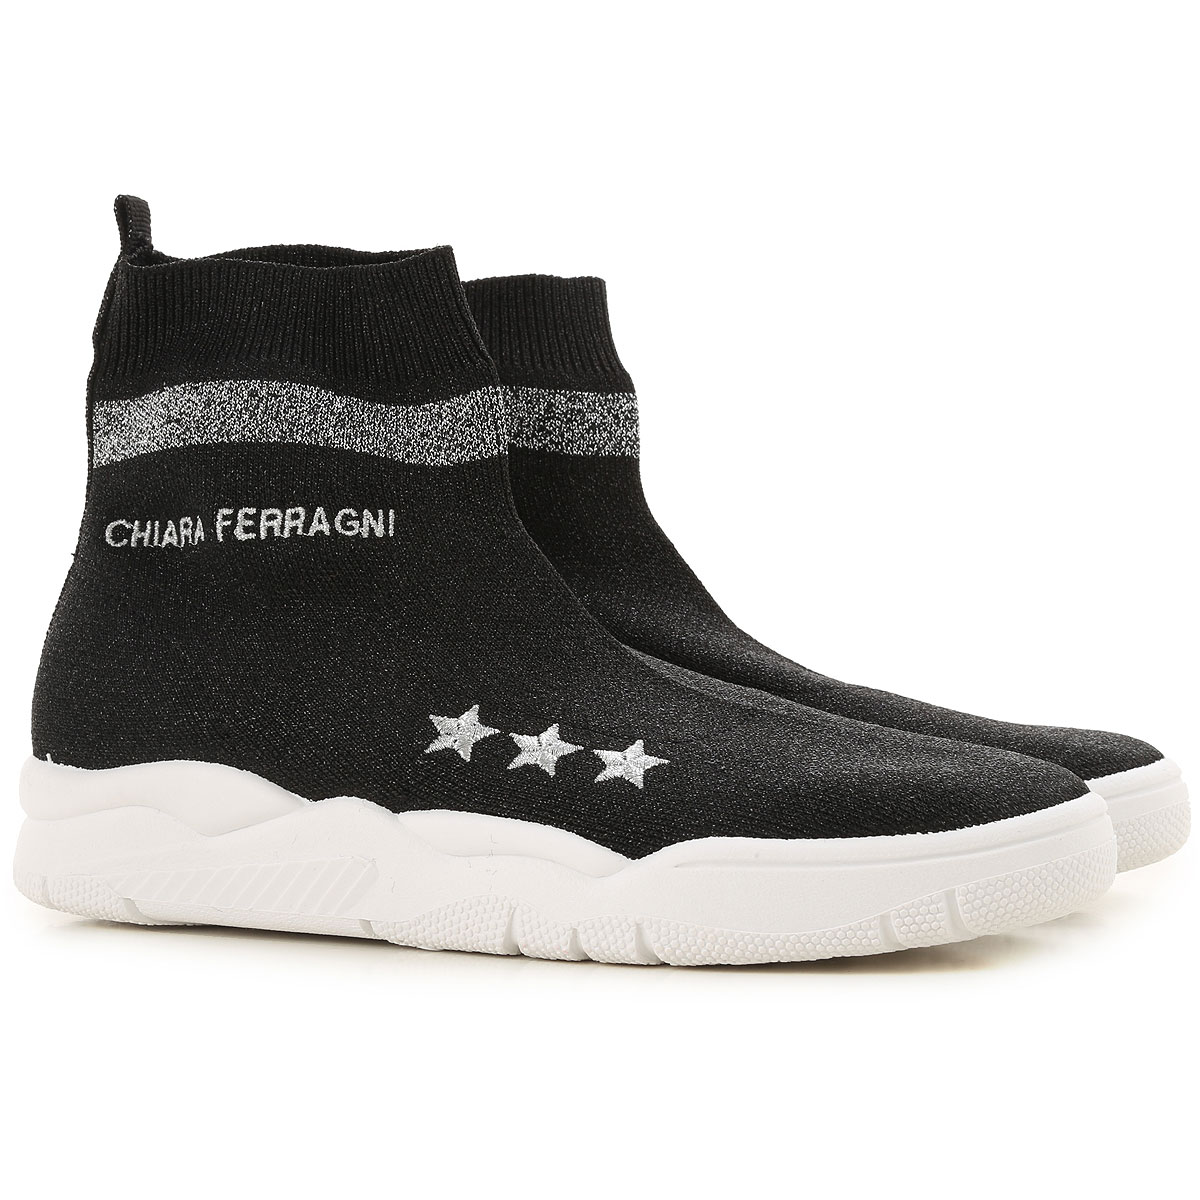 Chiara FerragniChiara Ferragni Sneakers for Women On Sale in Outlet, Black,  Fabric, 2019, 10 11 | DailyMail